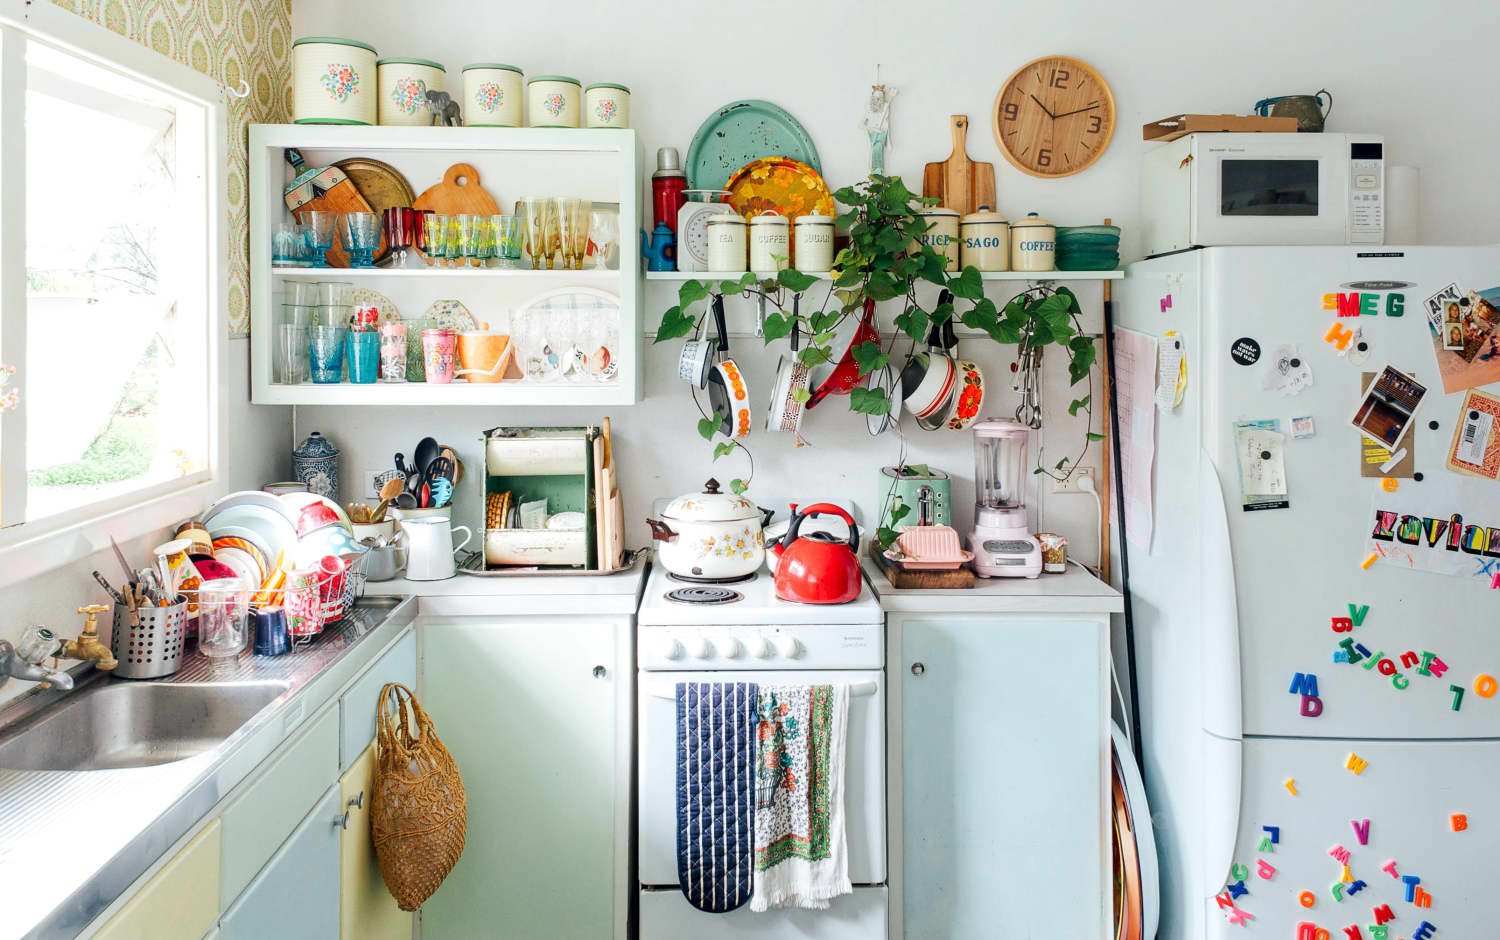 space efficient no clutter kitchen design